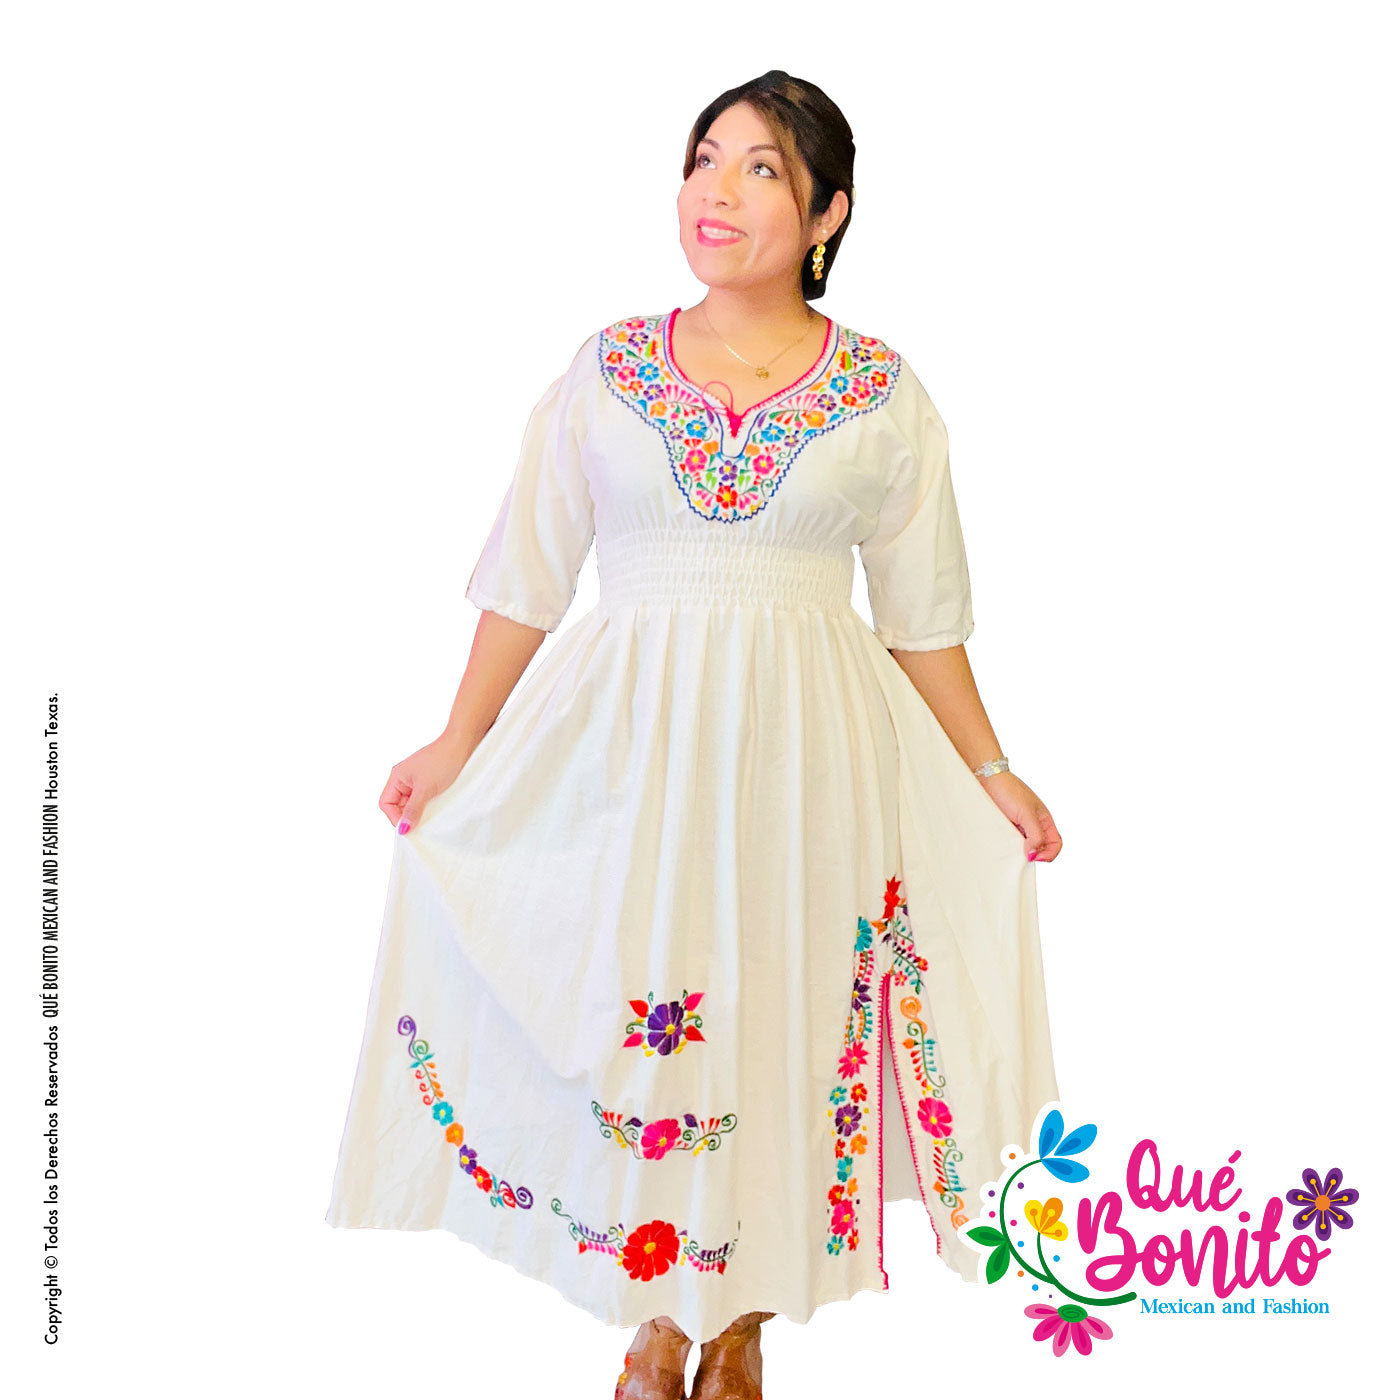 Leticia Maxi Beige Dress Bonito Mexican and Fashion